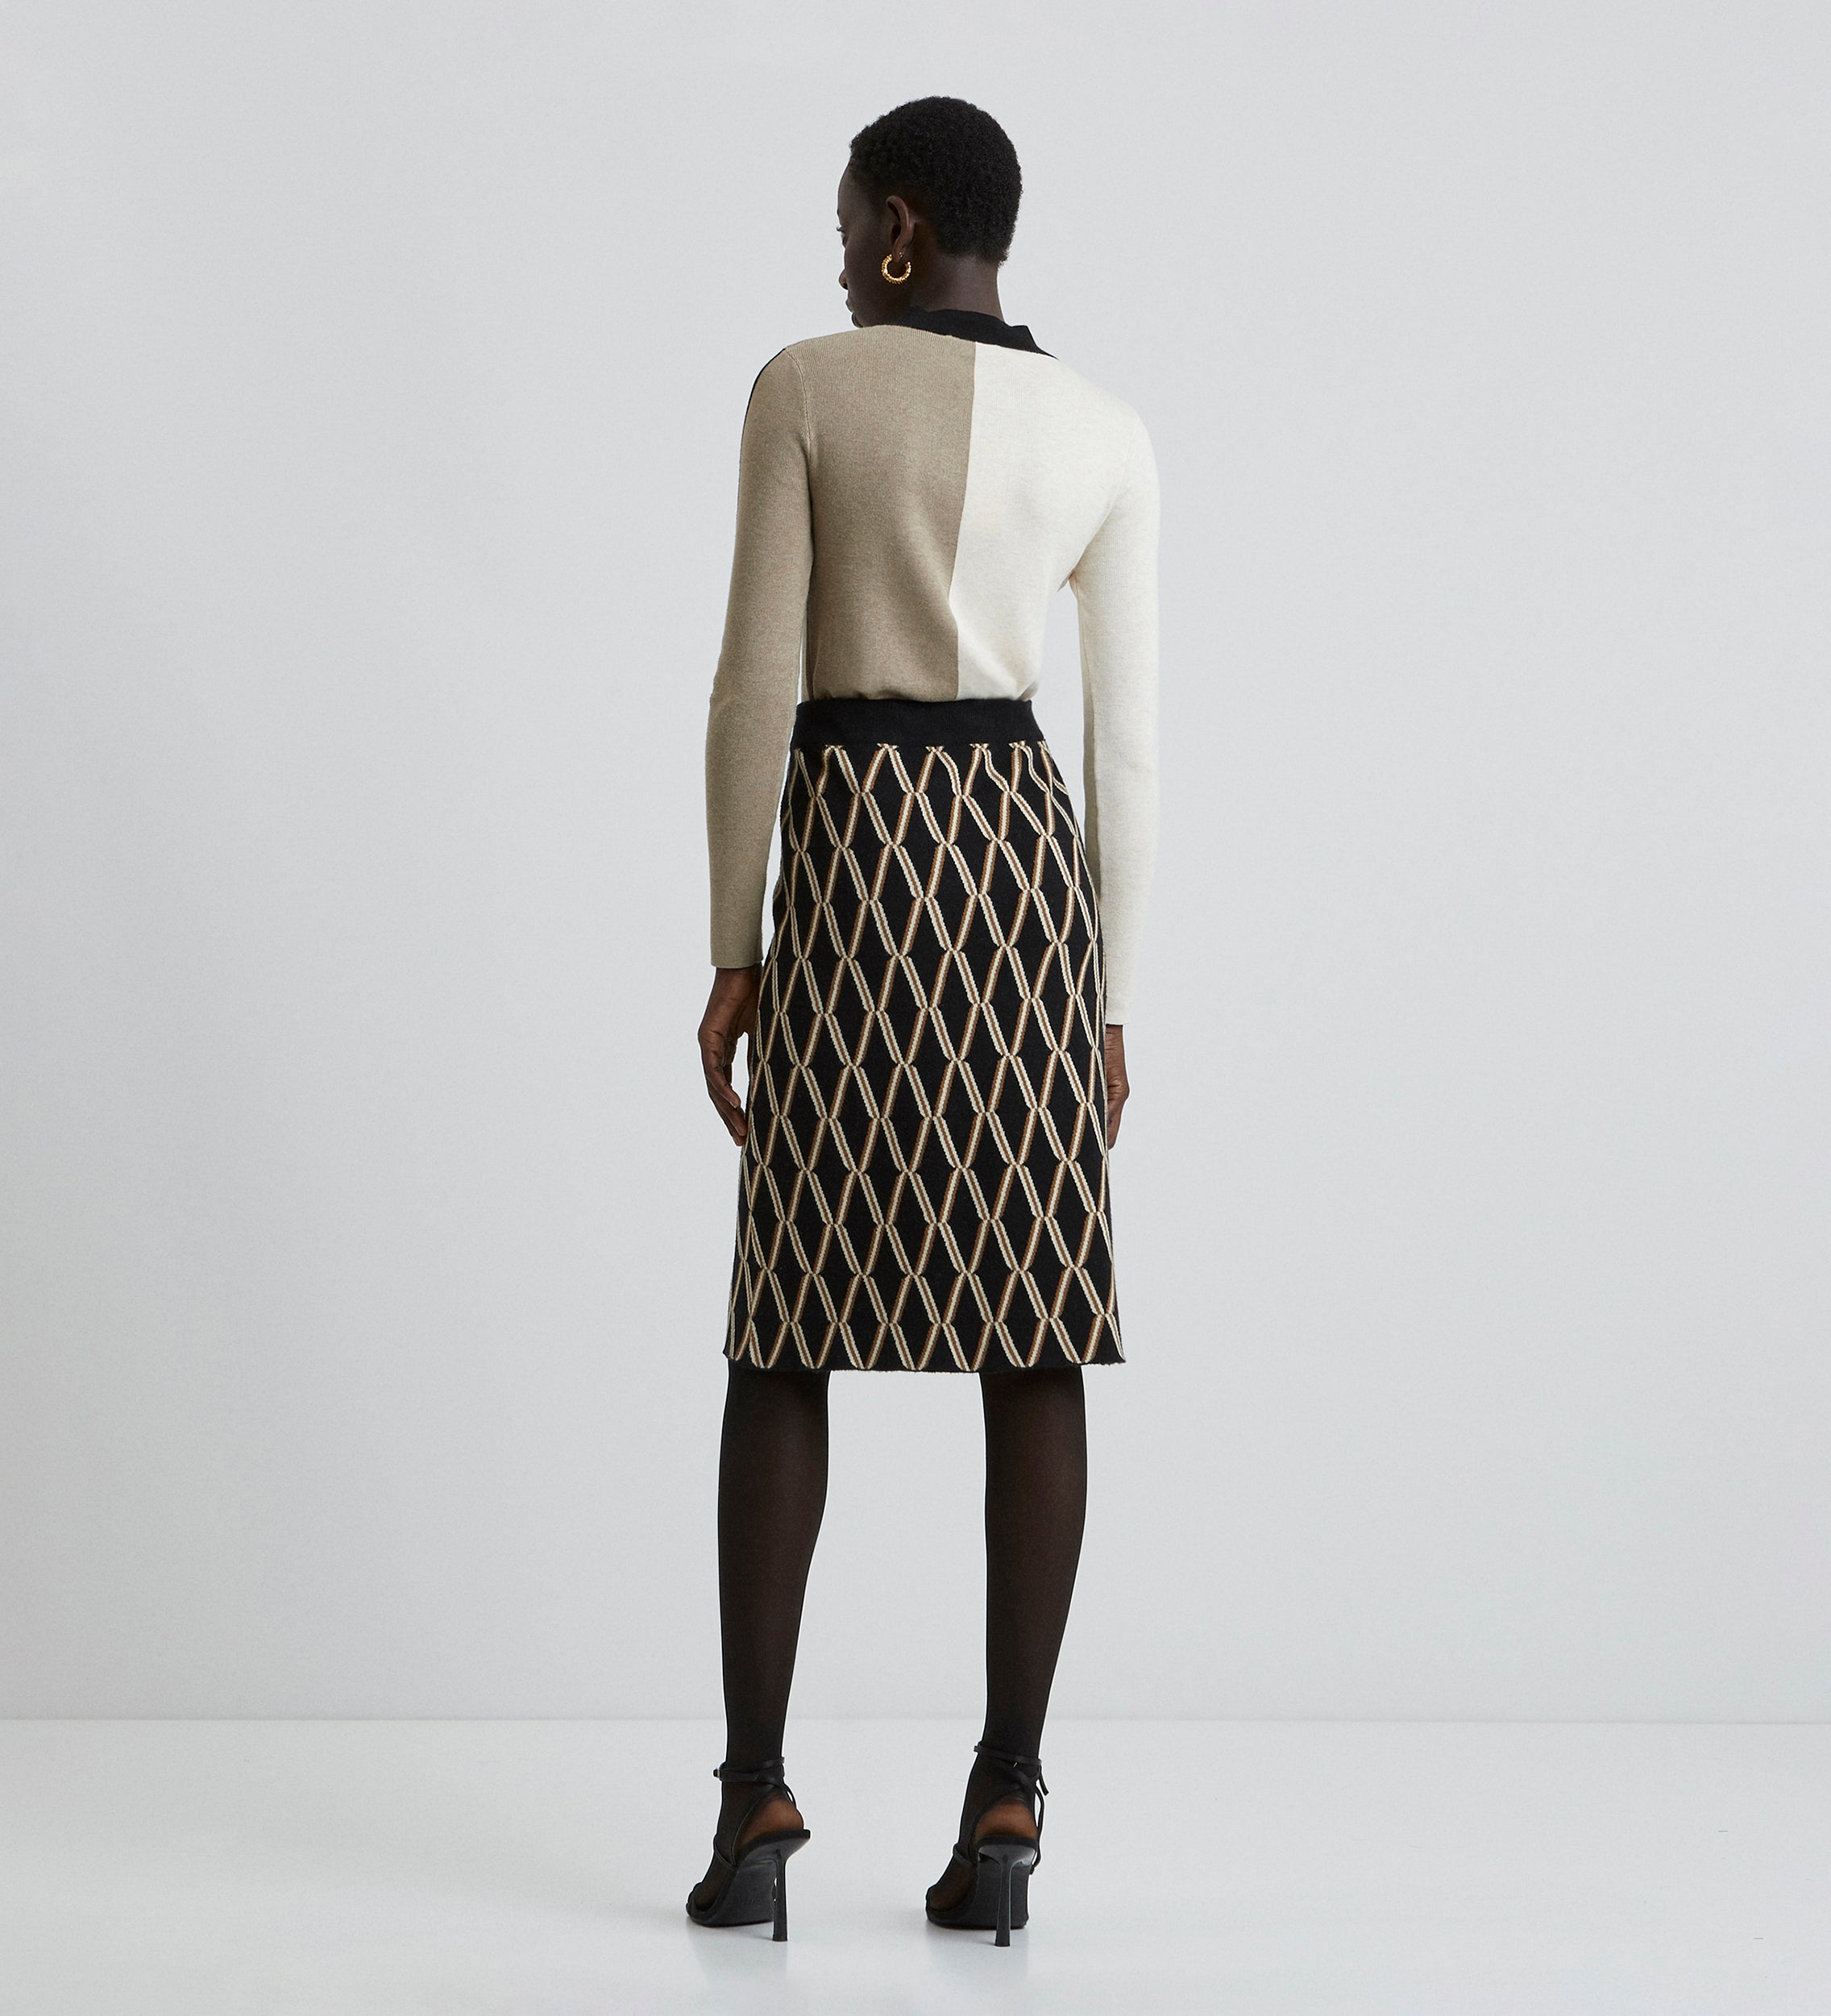 Jacquard knitted skirt